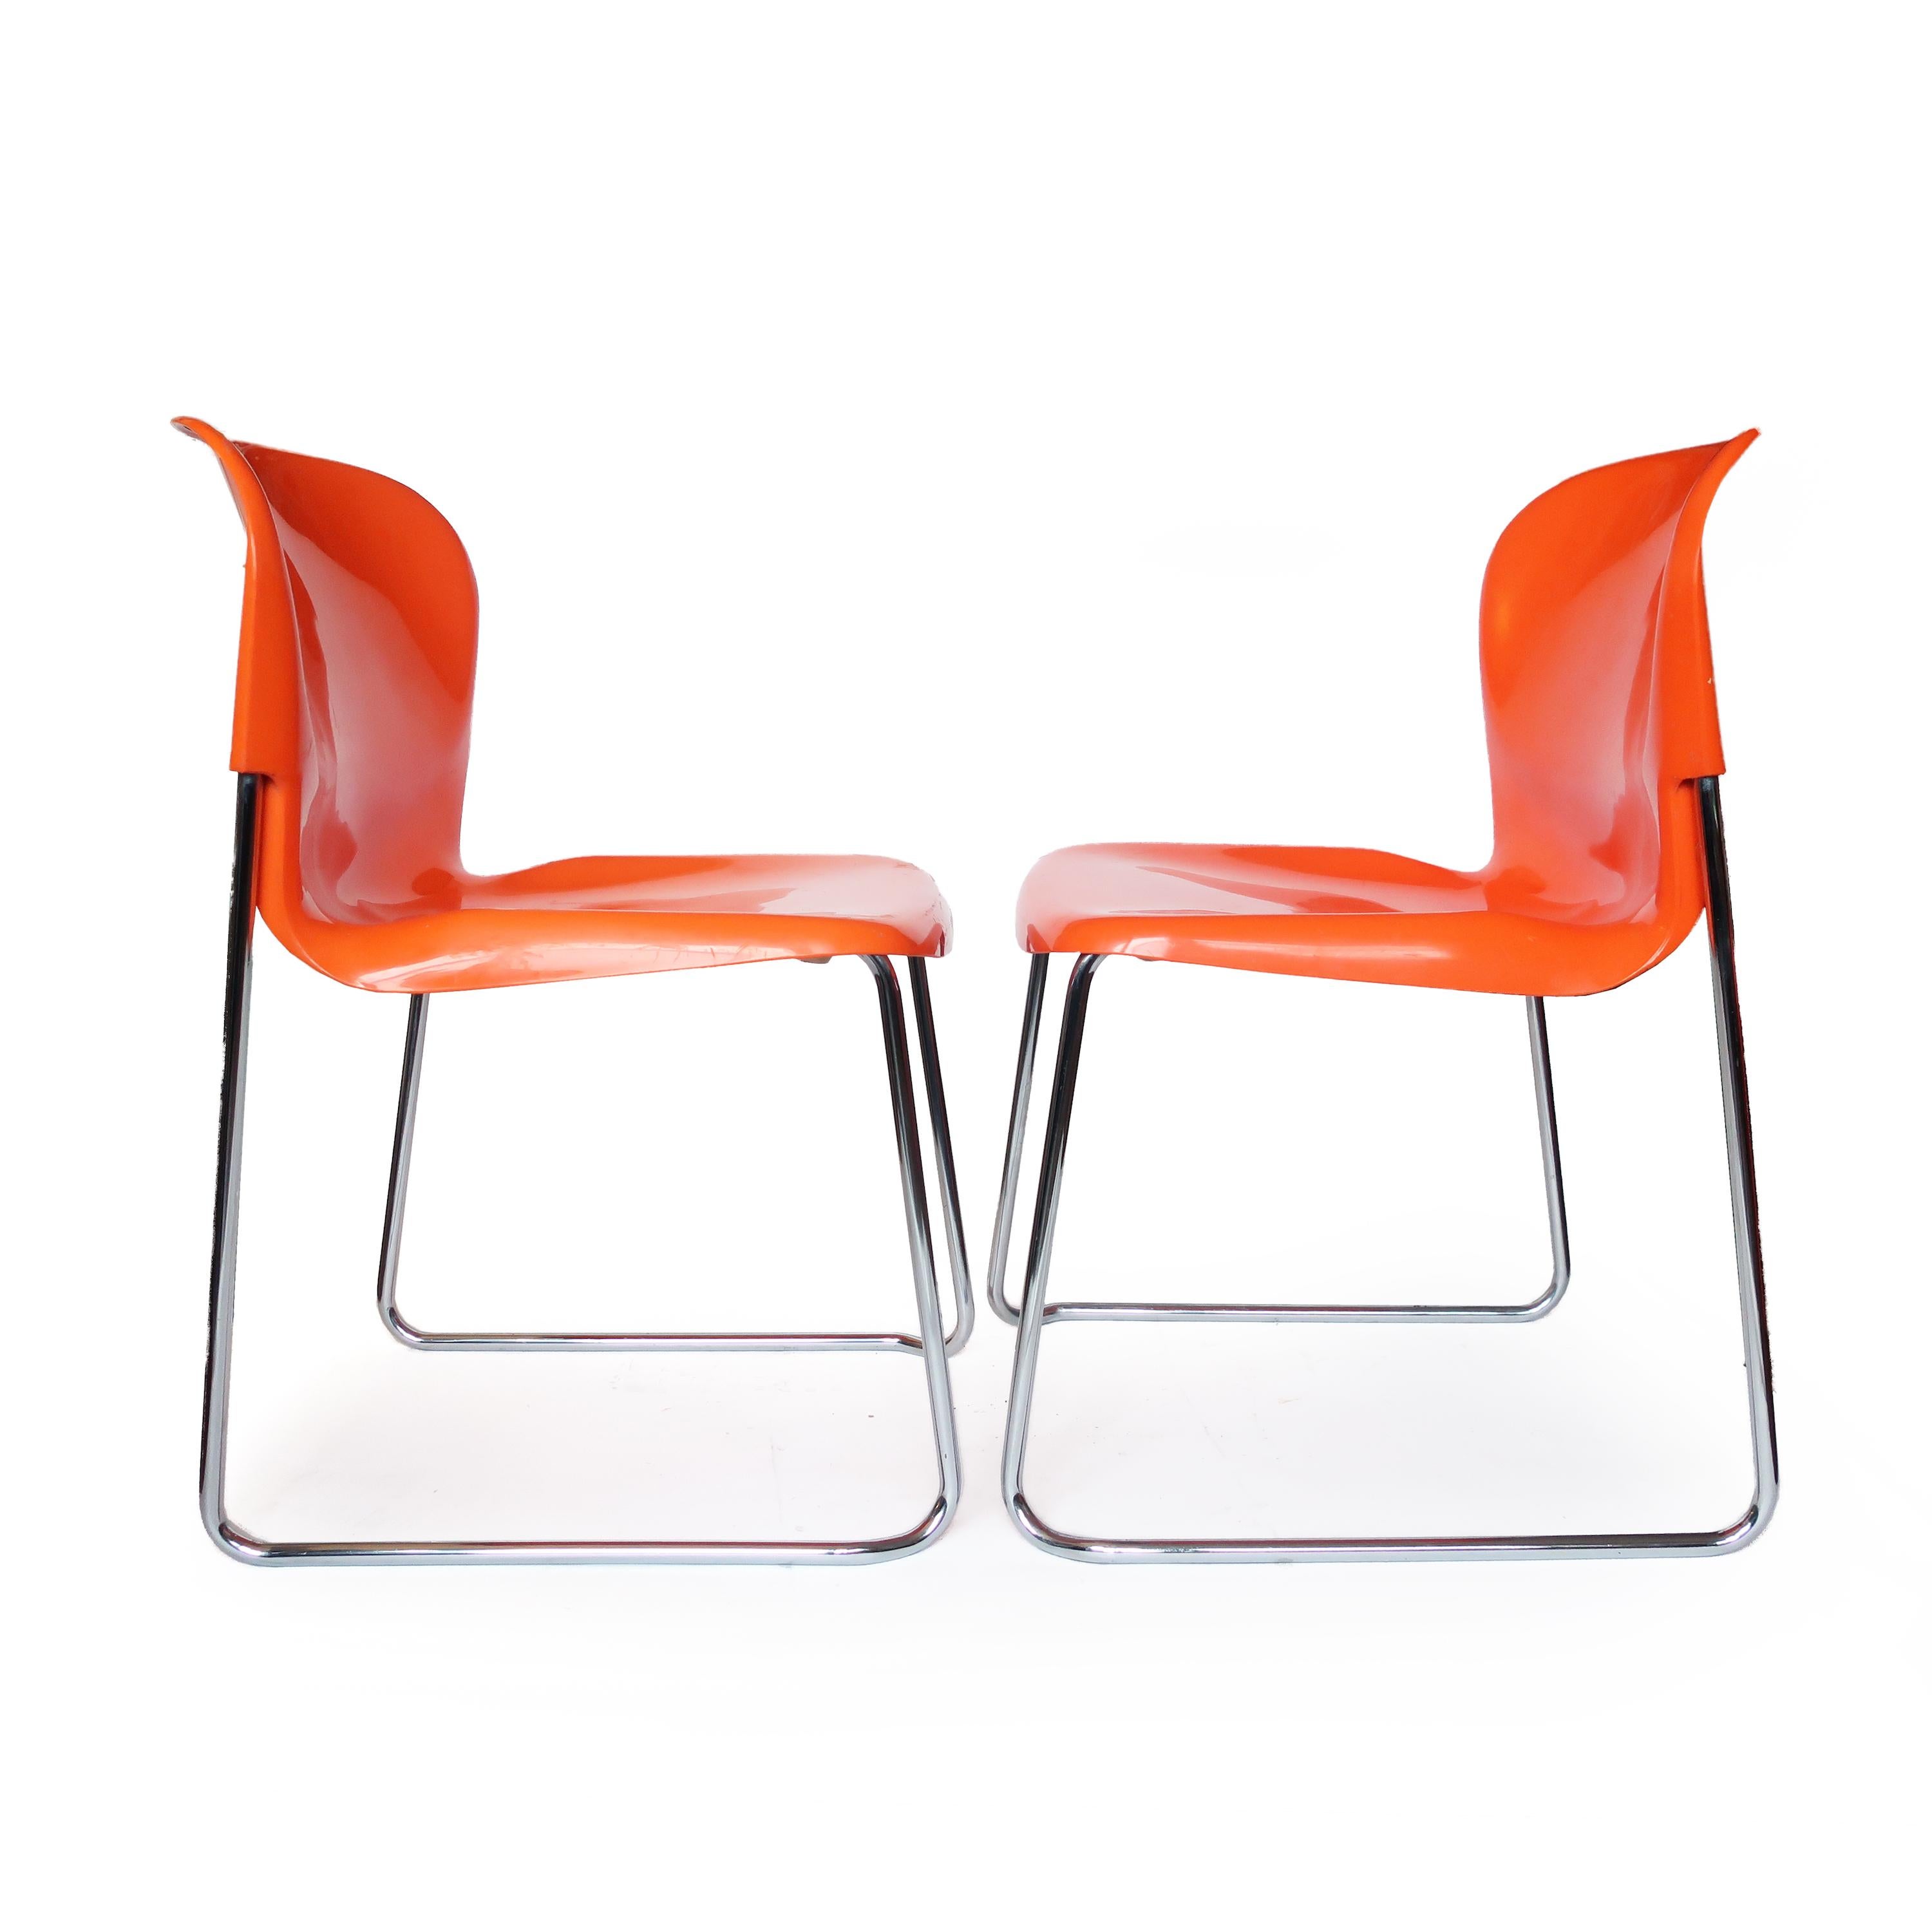 Ein farbenfrohes Paar SM 400 Swing-Stühle, entworfen in den 1970er Jahren von Gerd Lange für den westdeutschen Möbelhersteller Drabert. Die orangefarbenen Kunststoffsitze sitzen auf einem verchromten Gestell, das sich für die Lagerung leicht stapeln